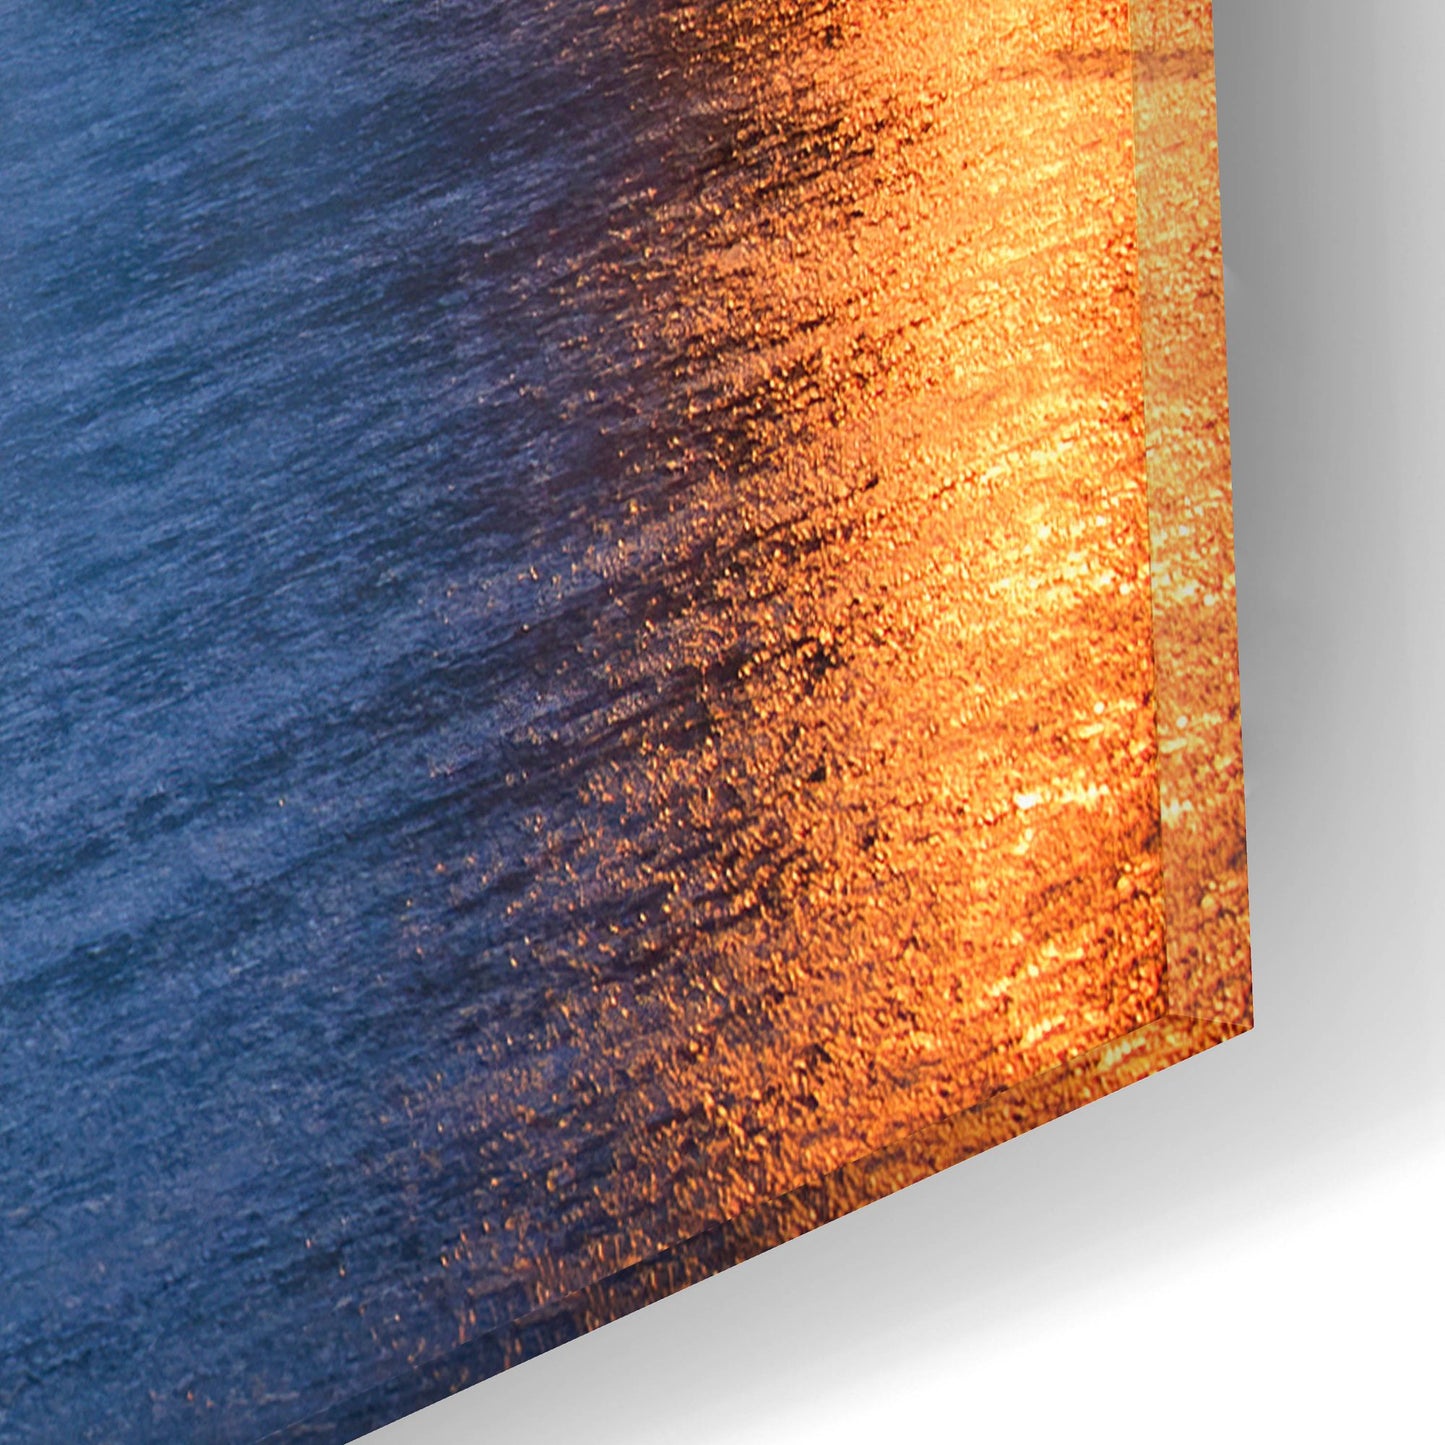 Epic Art ' Quiet Dawn On Mackinac Island' by Adam Romanowicz, Acrylic Glass Wall Art,16x12